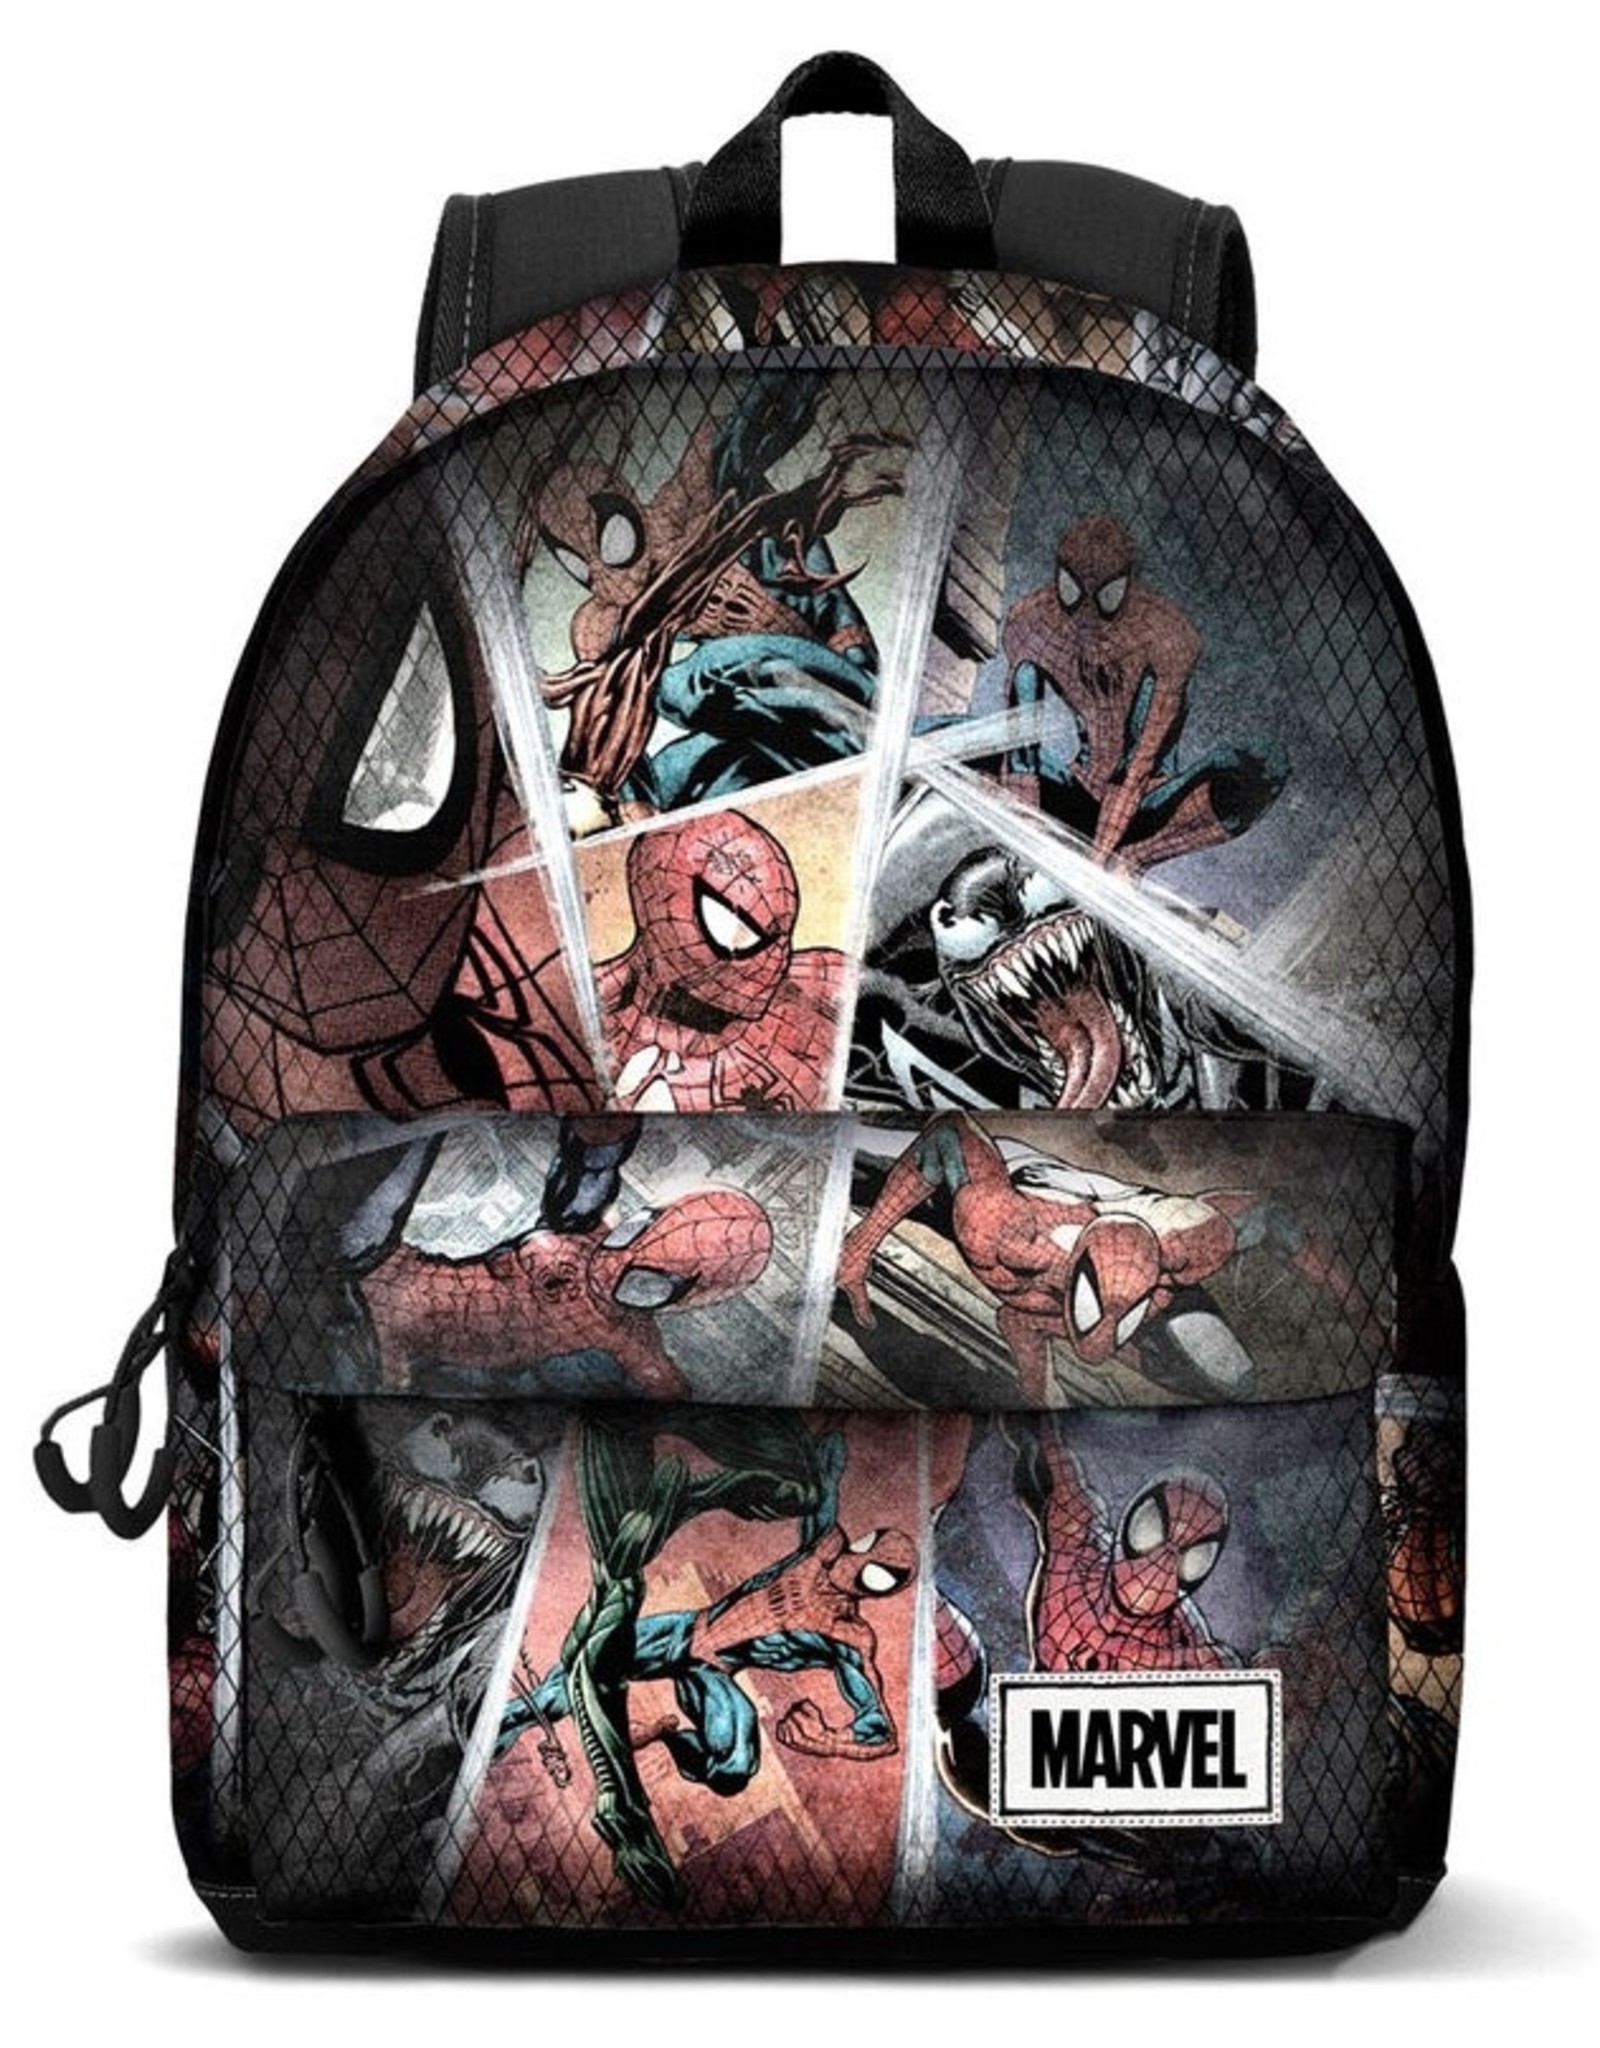 Marvel Merchandise bags - Marvel Spiderman backpack 42cm